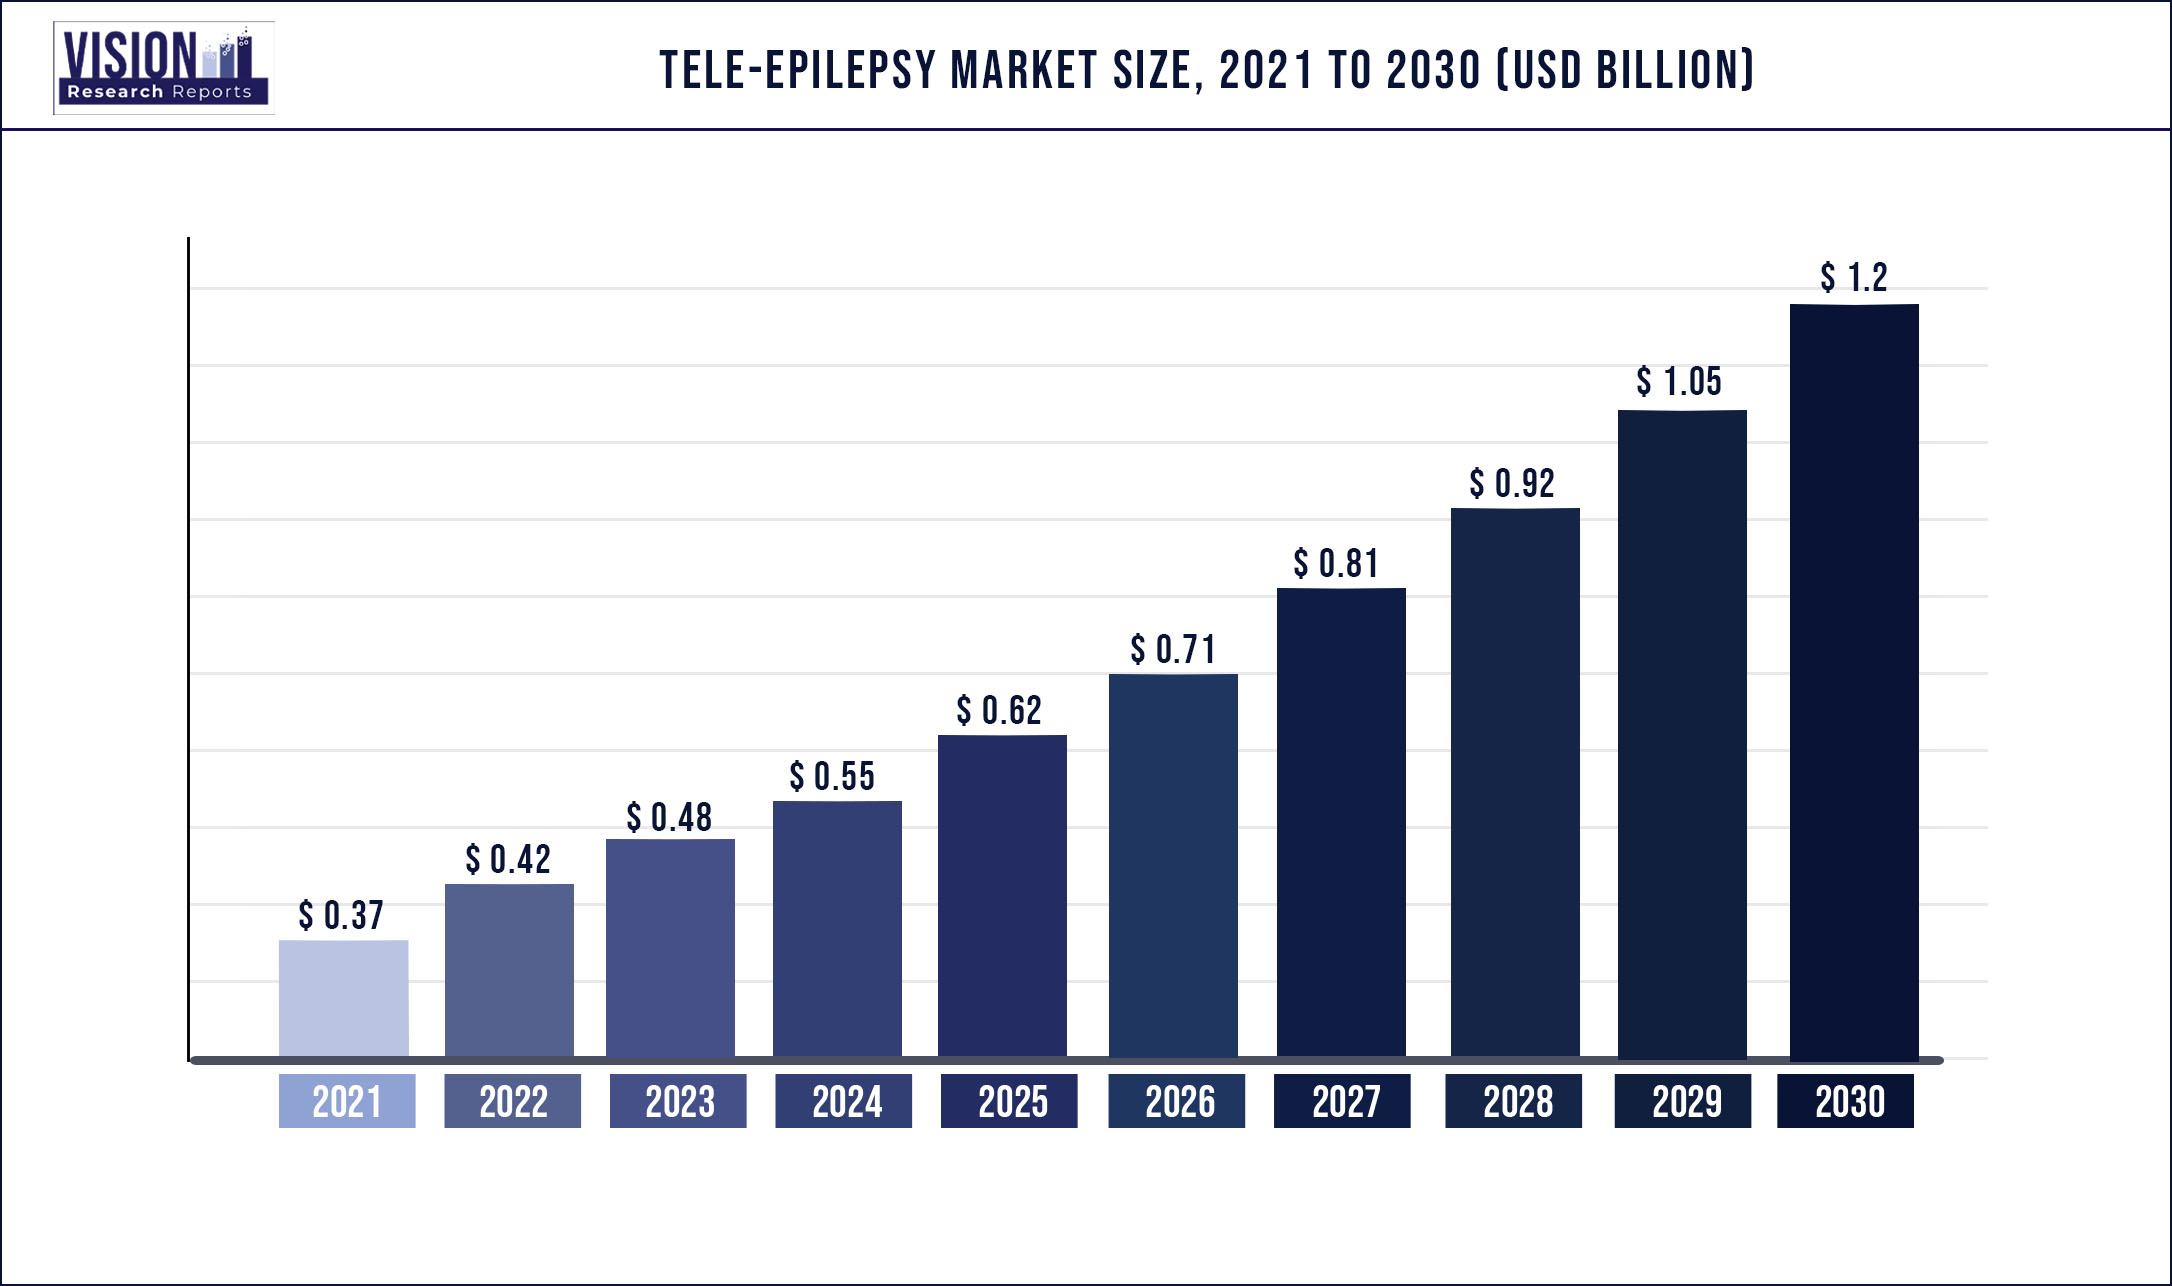 Tele-Epilepsy Market Size 2021 to 2030